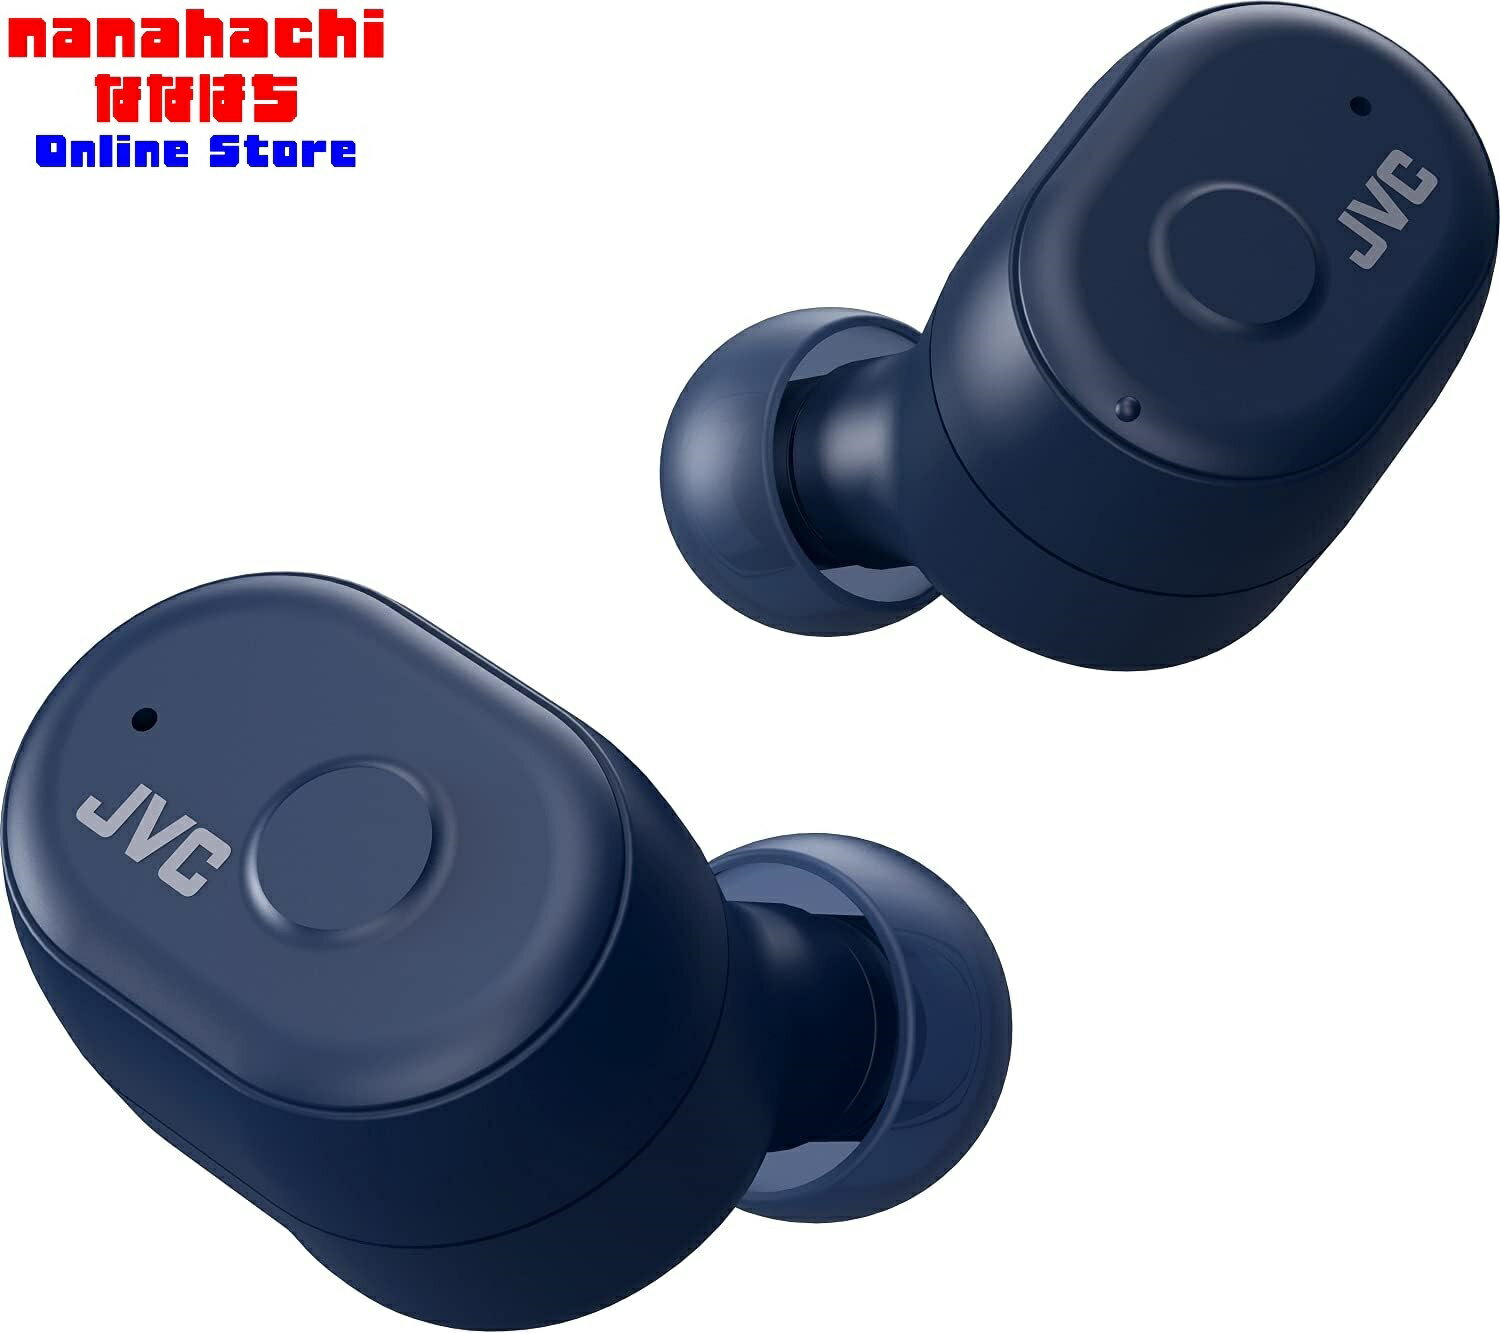 完全ワイヤレスイヤホン JVC ジェイブイシー HA-A11T-A［インディゴブルー］Bluetooth対応 完全ワイヤレスイヤホンが初めての方でも簡単操作ワンボタンによる簡単操作が可能な完全ワイヤレスイヤホン 耳にしっかりとフィットするシンプルなデザイン